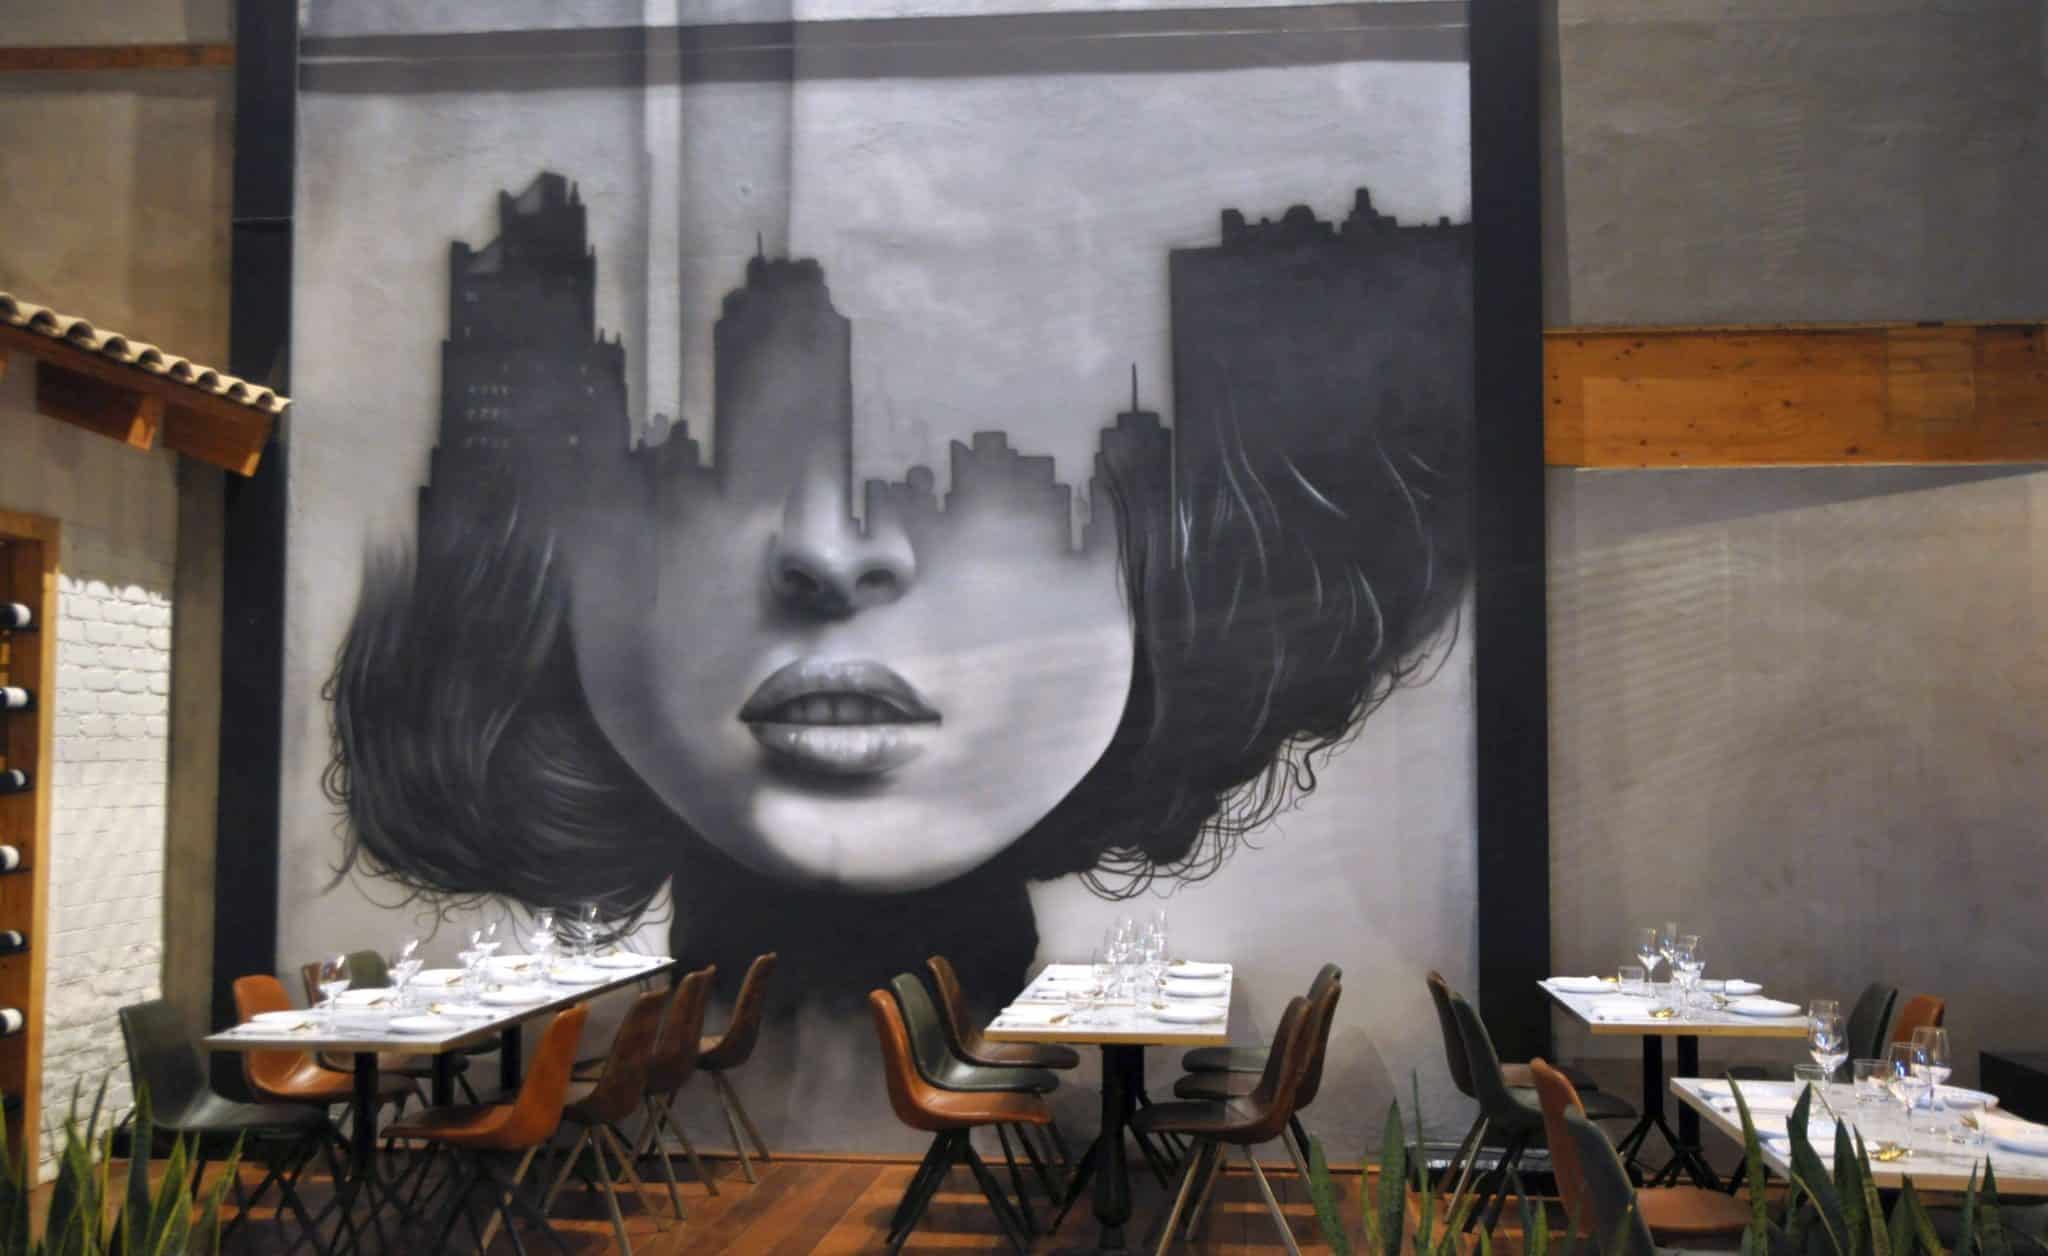 את הקיר המרכזי של המסעדה מפאר גרפיטי אורבני יפהפה המשרה אווירה ייחודית צעירה ועכשווית. צילום איריס לוי